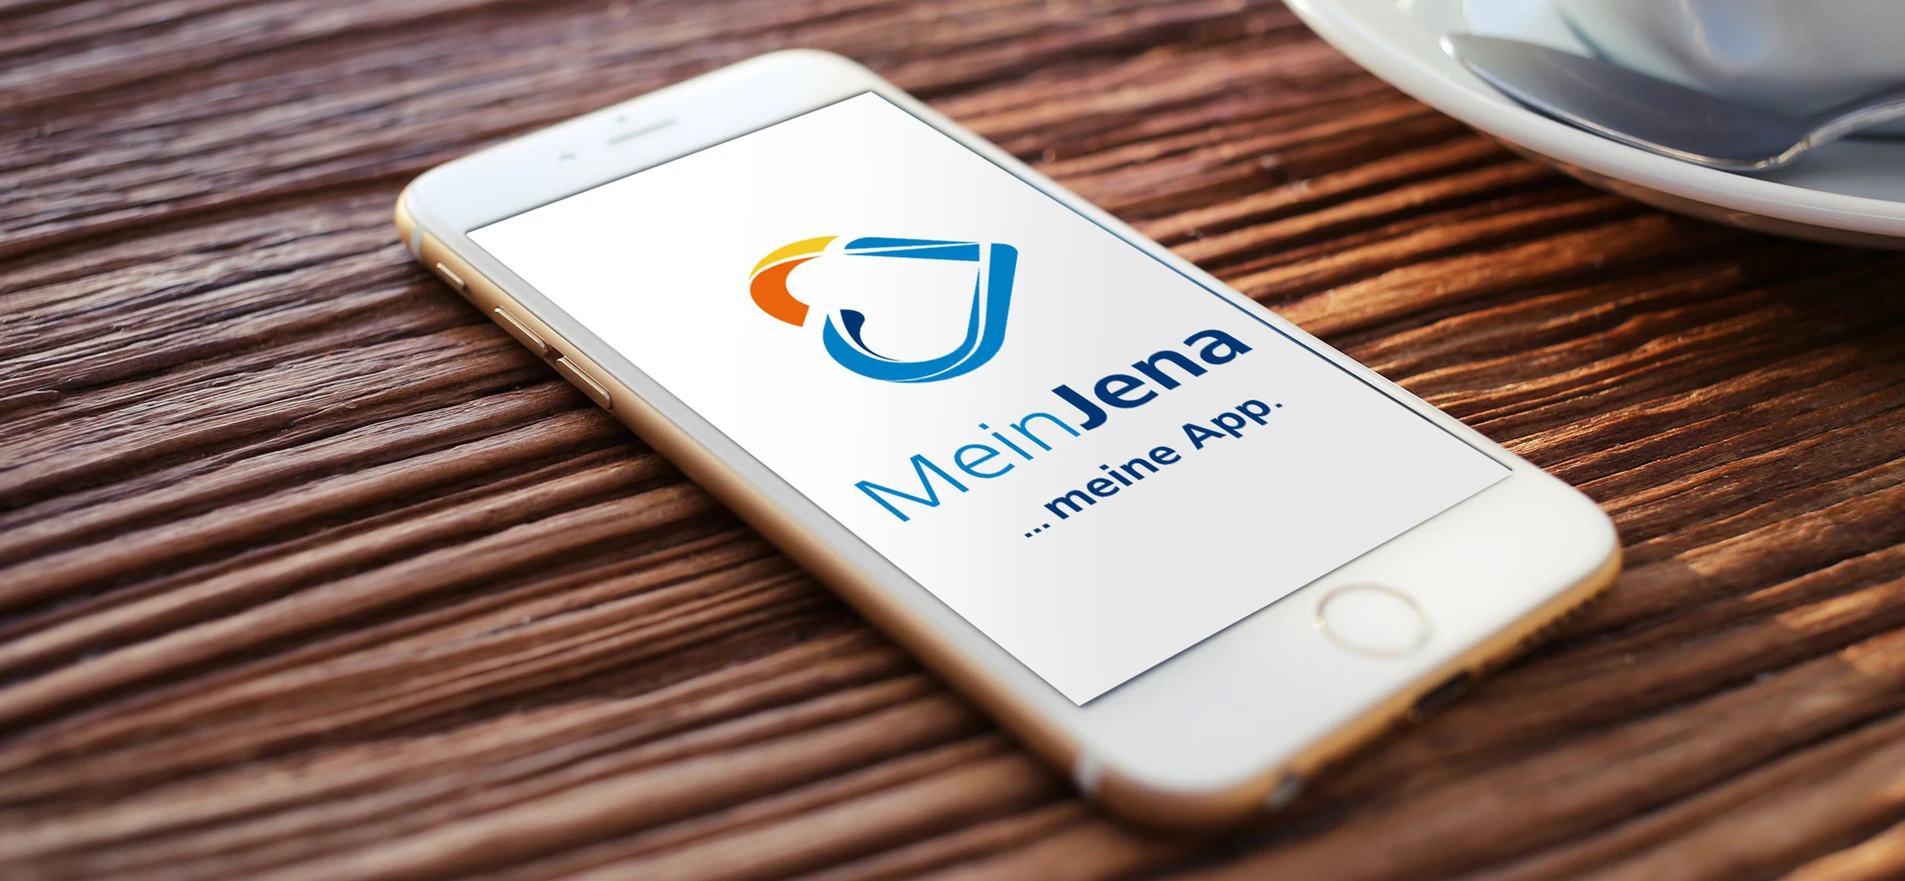 MeinJena – kartinka realisiert Wort-/Bildmarke und Markteinführungskampagne für die neue App 